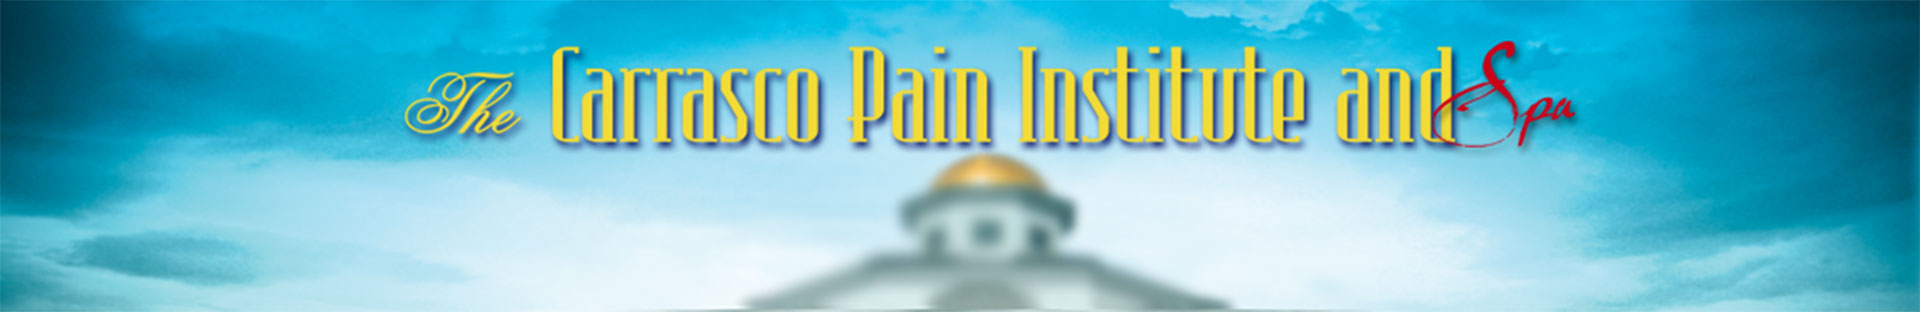 Carrasco Pain Institute